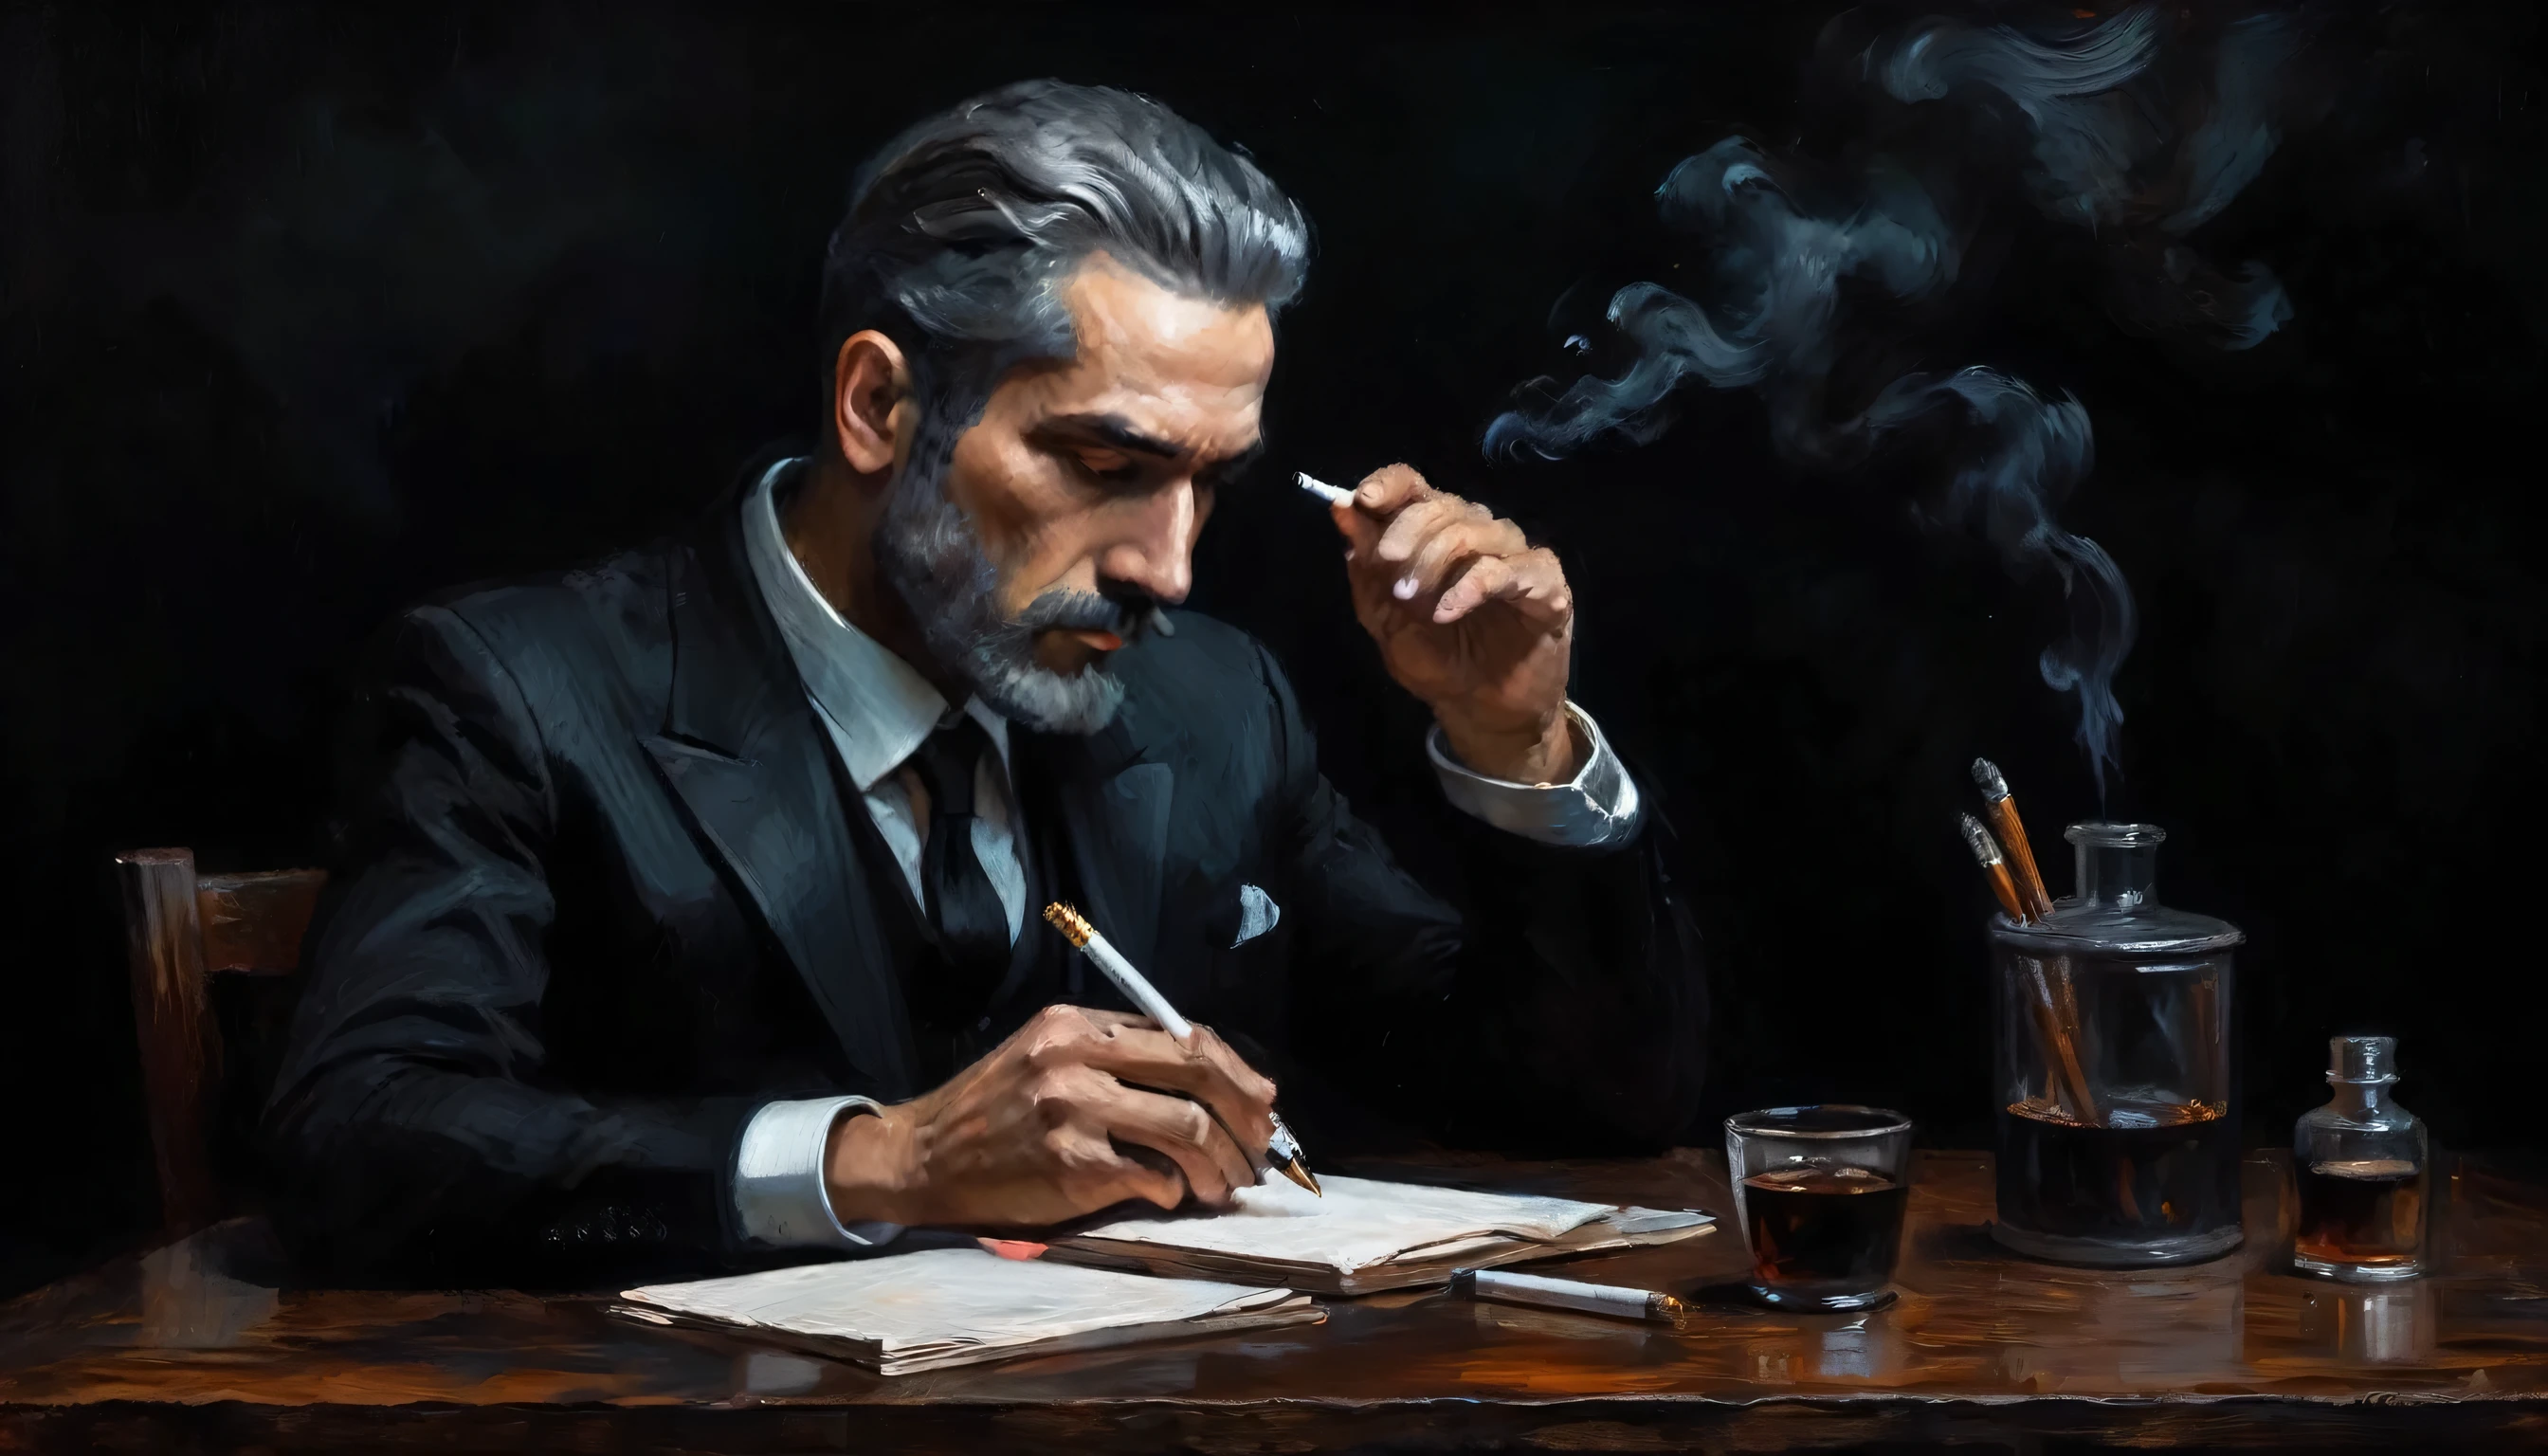 한 남자, 1명, 담배를 피우다, 담배 1개비, 두손, 글쓰기, 펜을 들고, 완벽한 손가락, 검은 양복을 입고, 나무 테이블 앞에 놓여진, 검정색 배경, 우울한 표현, 확산 조명, 긴장감 넘치는 분위기, 어두운 색상, 유화 스타일, 걸작